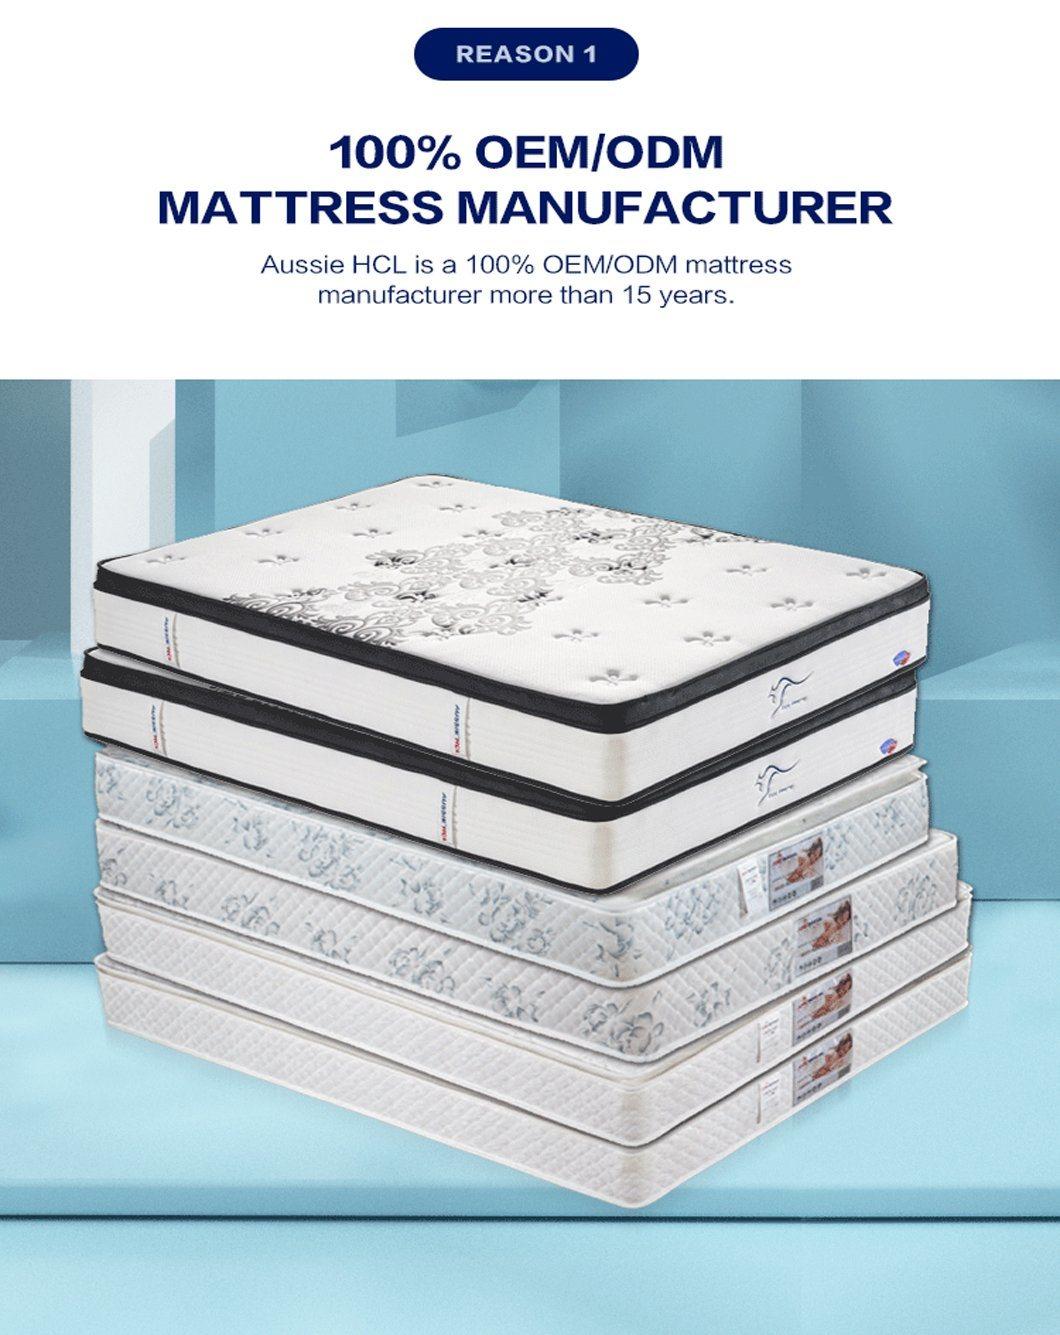 The Best Factory Aussile Roll Sleep Well Memory Gel Foam King Queen Mattress in a Box Pocket Spring Mattresses